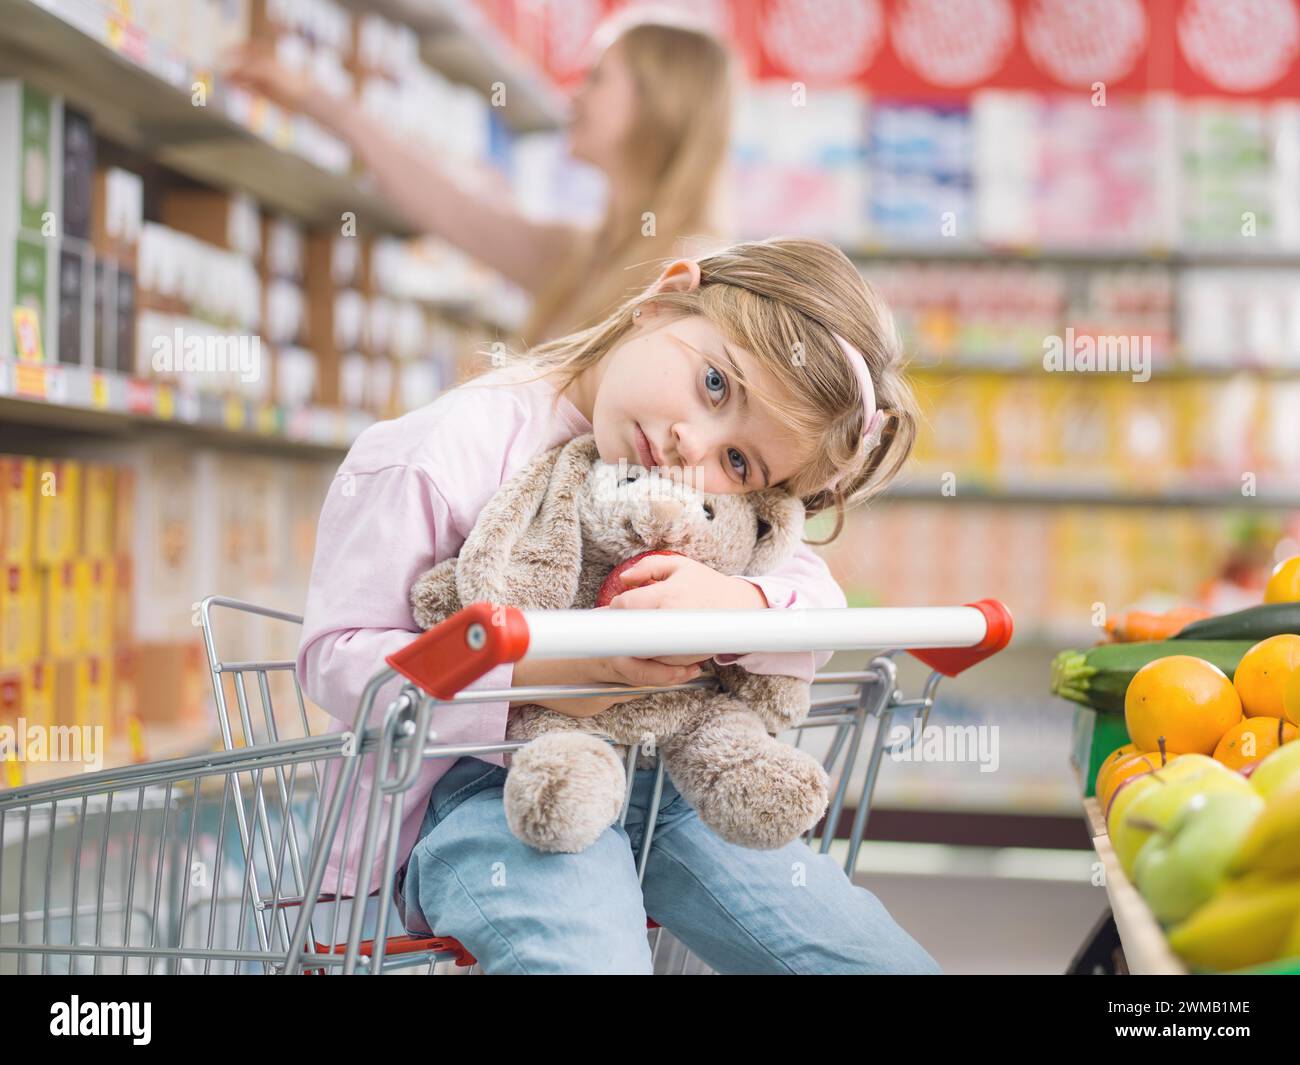 Niedliches gelangweiltes Kind, das auf einem Einkaufswagen sitzt und ihr Plüschtier umarmt, wartet auf ihre Mutter Stockfoto